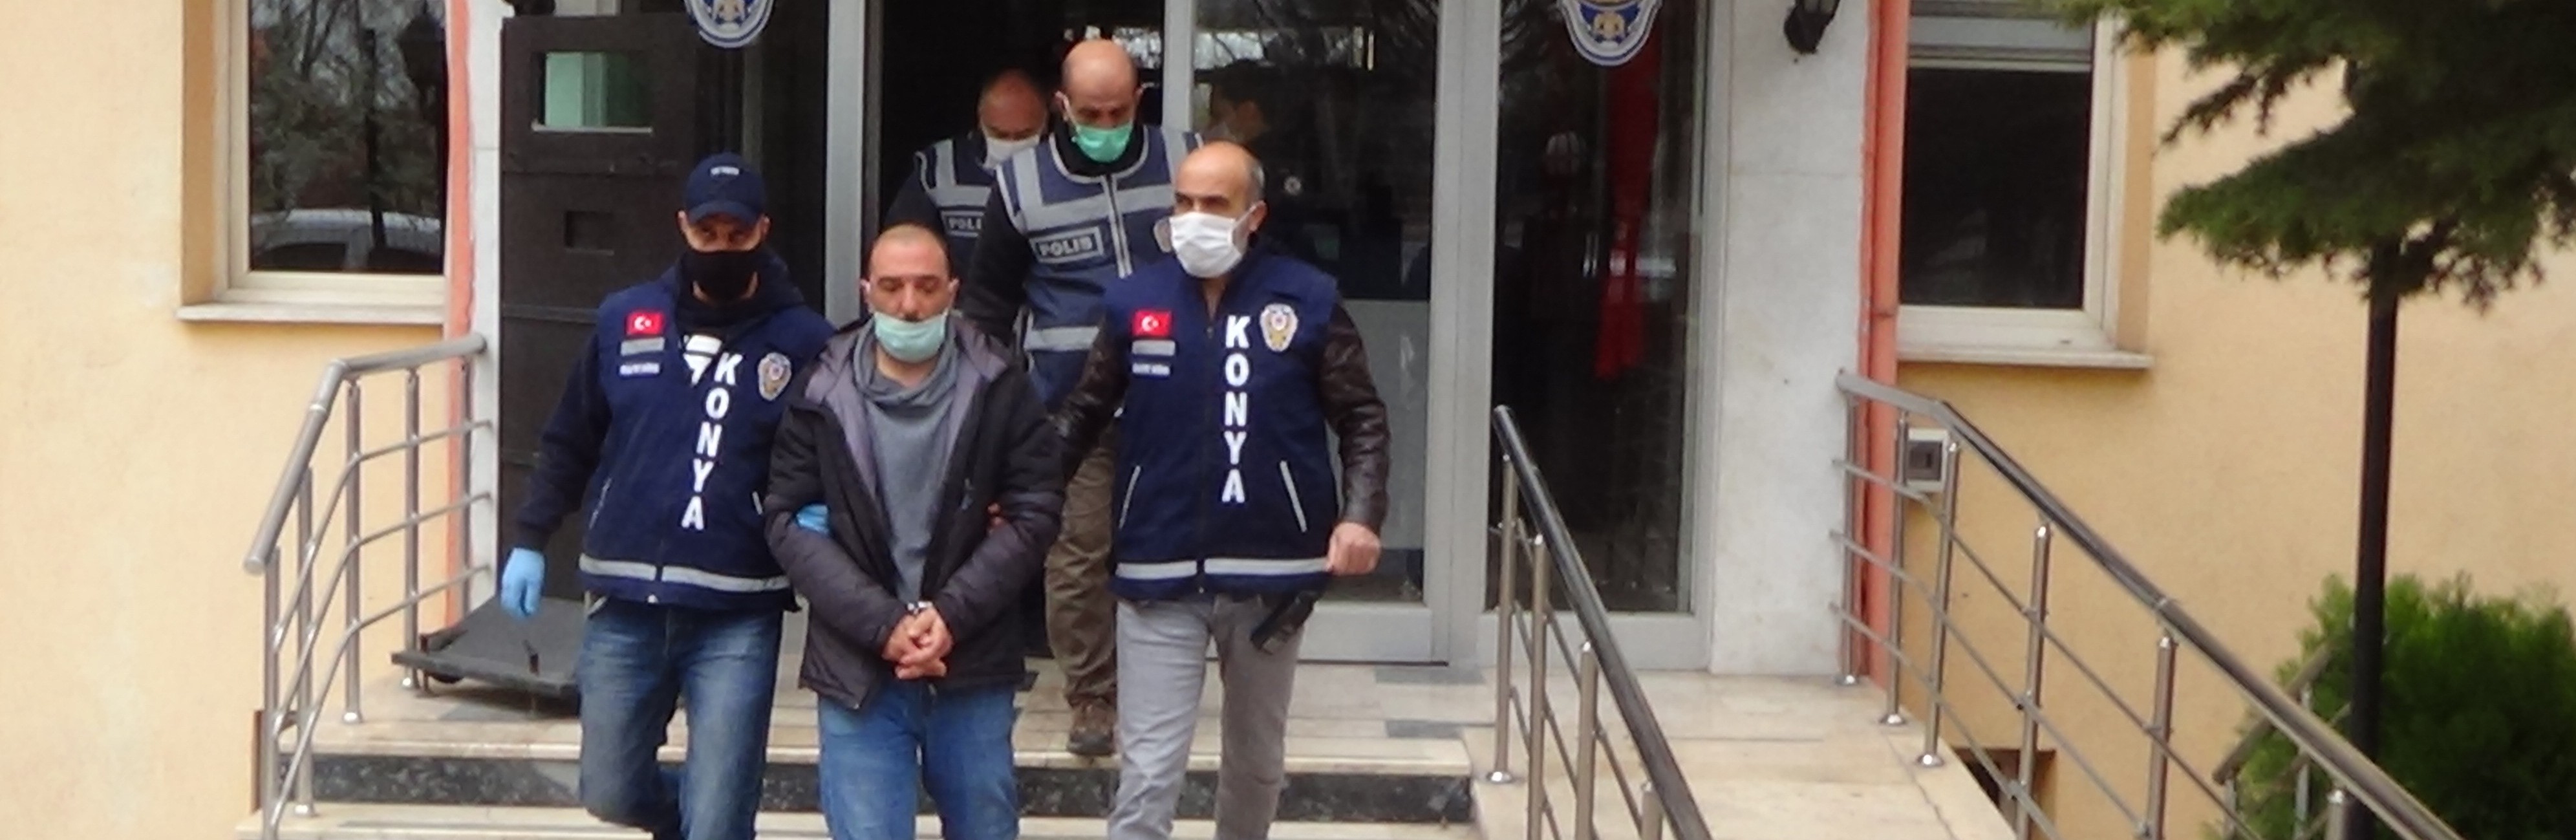 Konya'da tabancayla 3 kişiyi öldüren sanık hakkında 3 kez ağırlaştırılmış müebbet hapis istemi